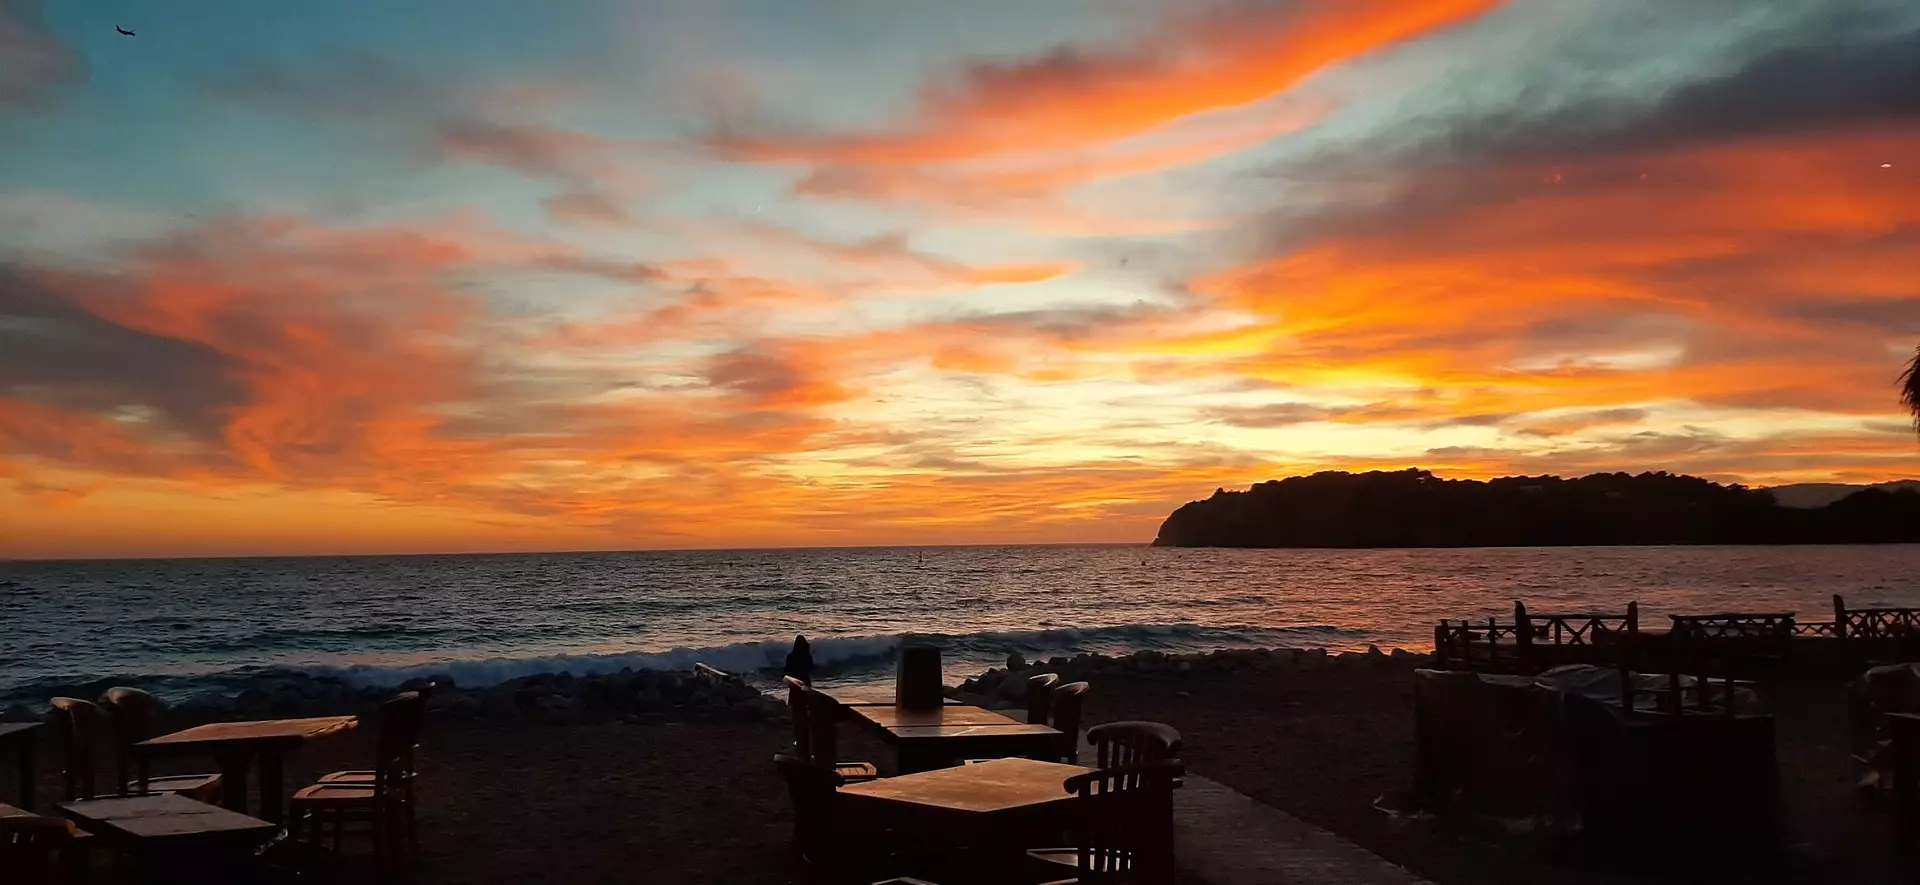 You can't beat an Ibizan sunset.